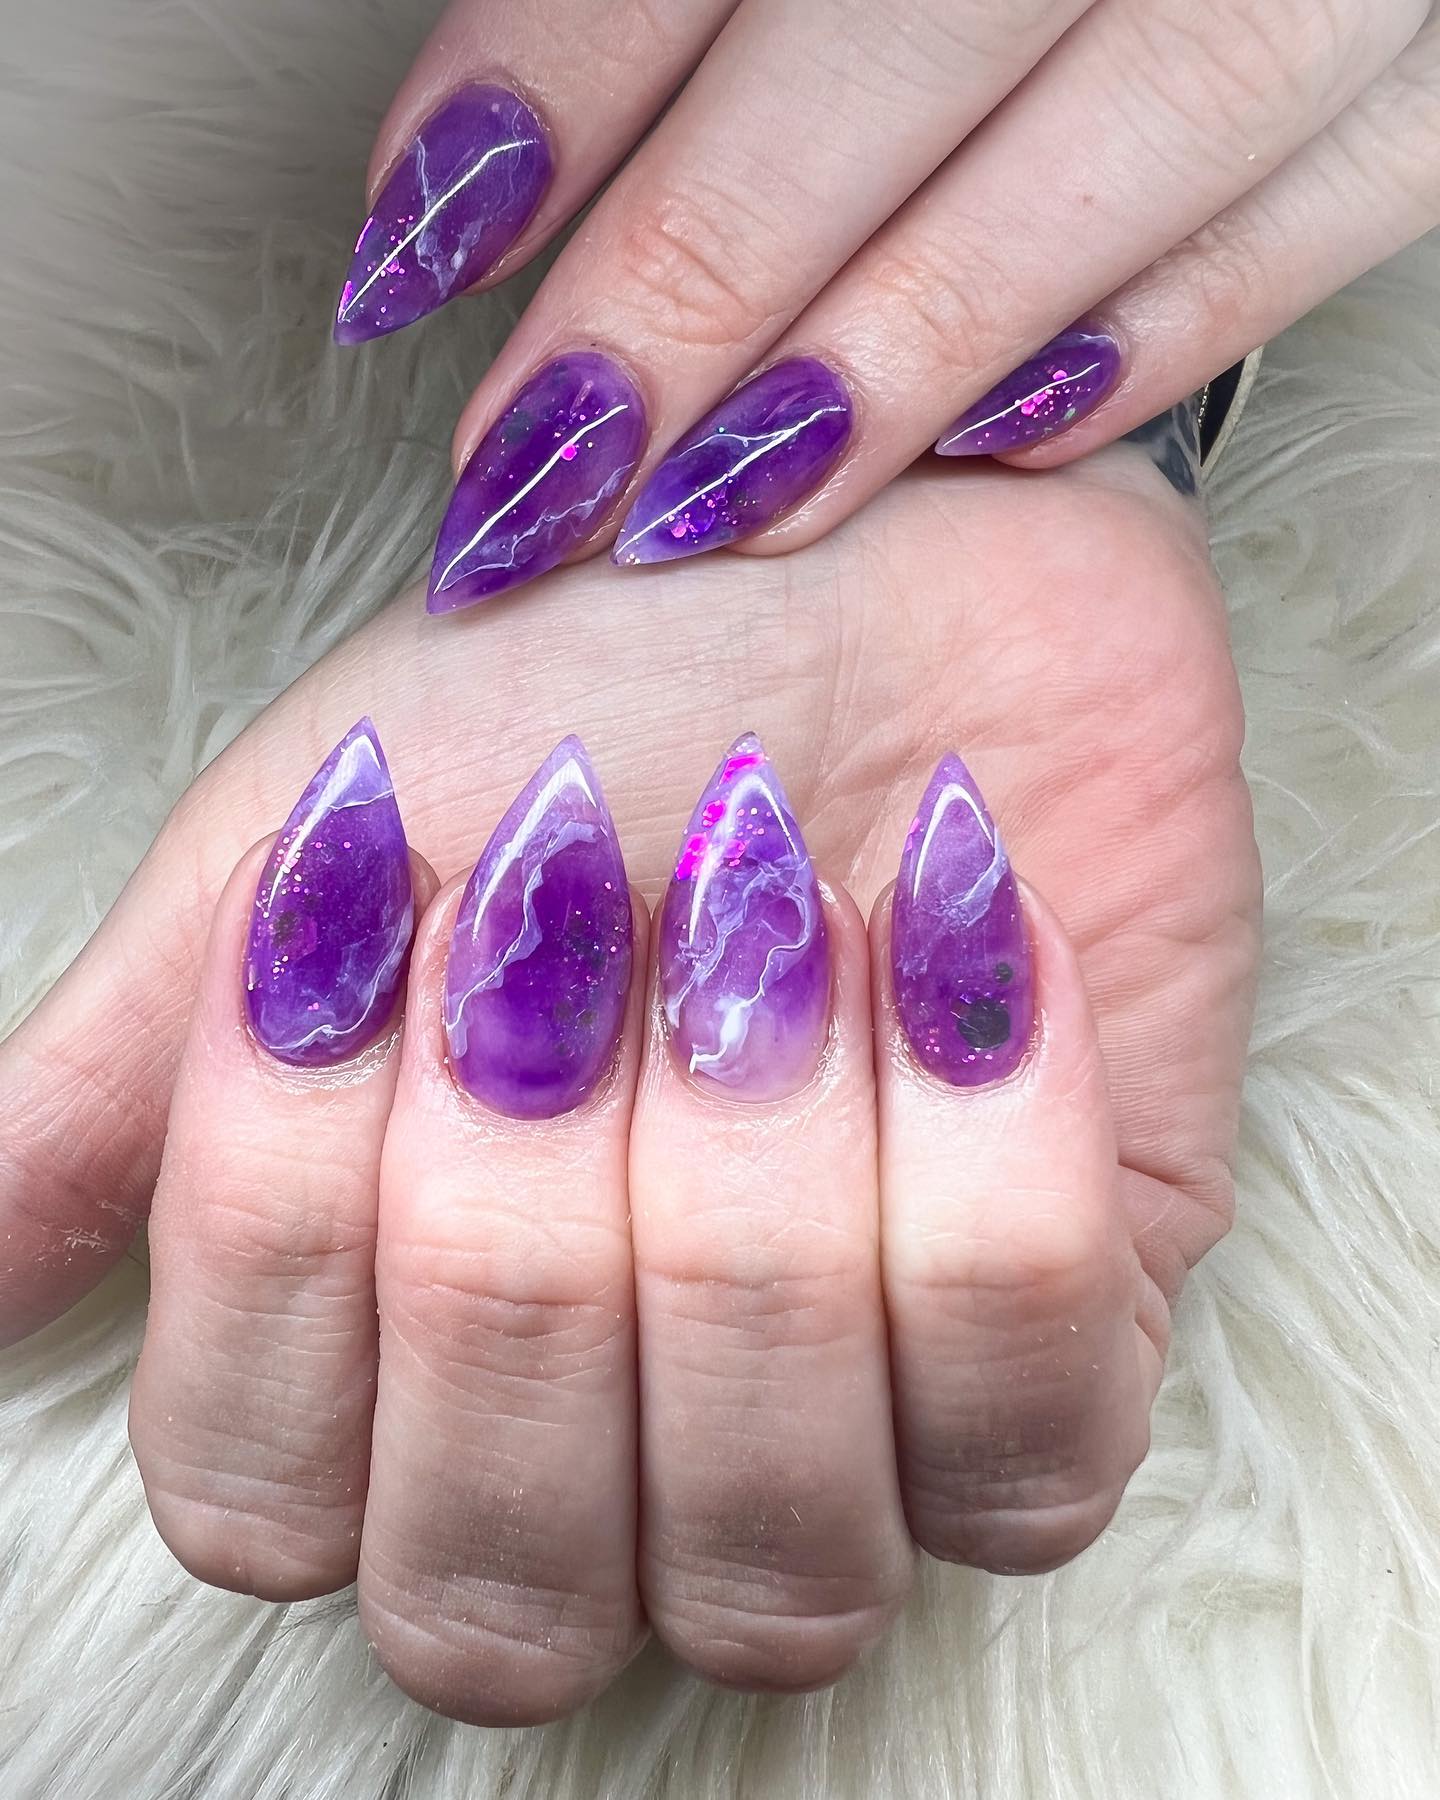 Estas uñas stiletto de gelatina llevarán tus uñas a un nuevo nivel.  El color violeta se ve increíble.